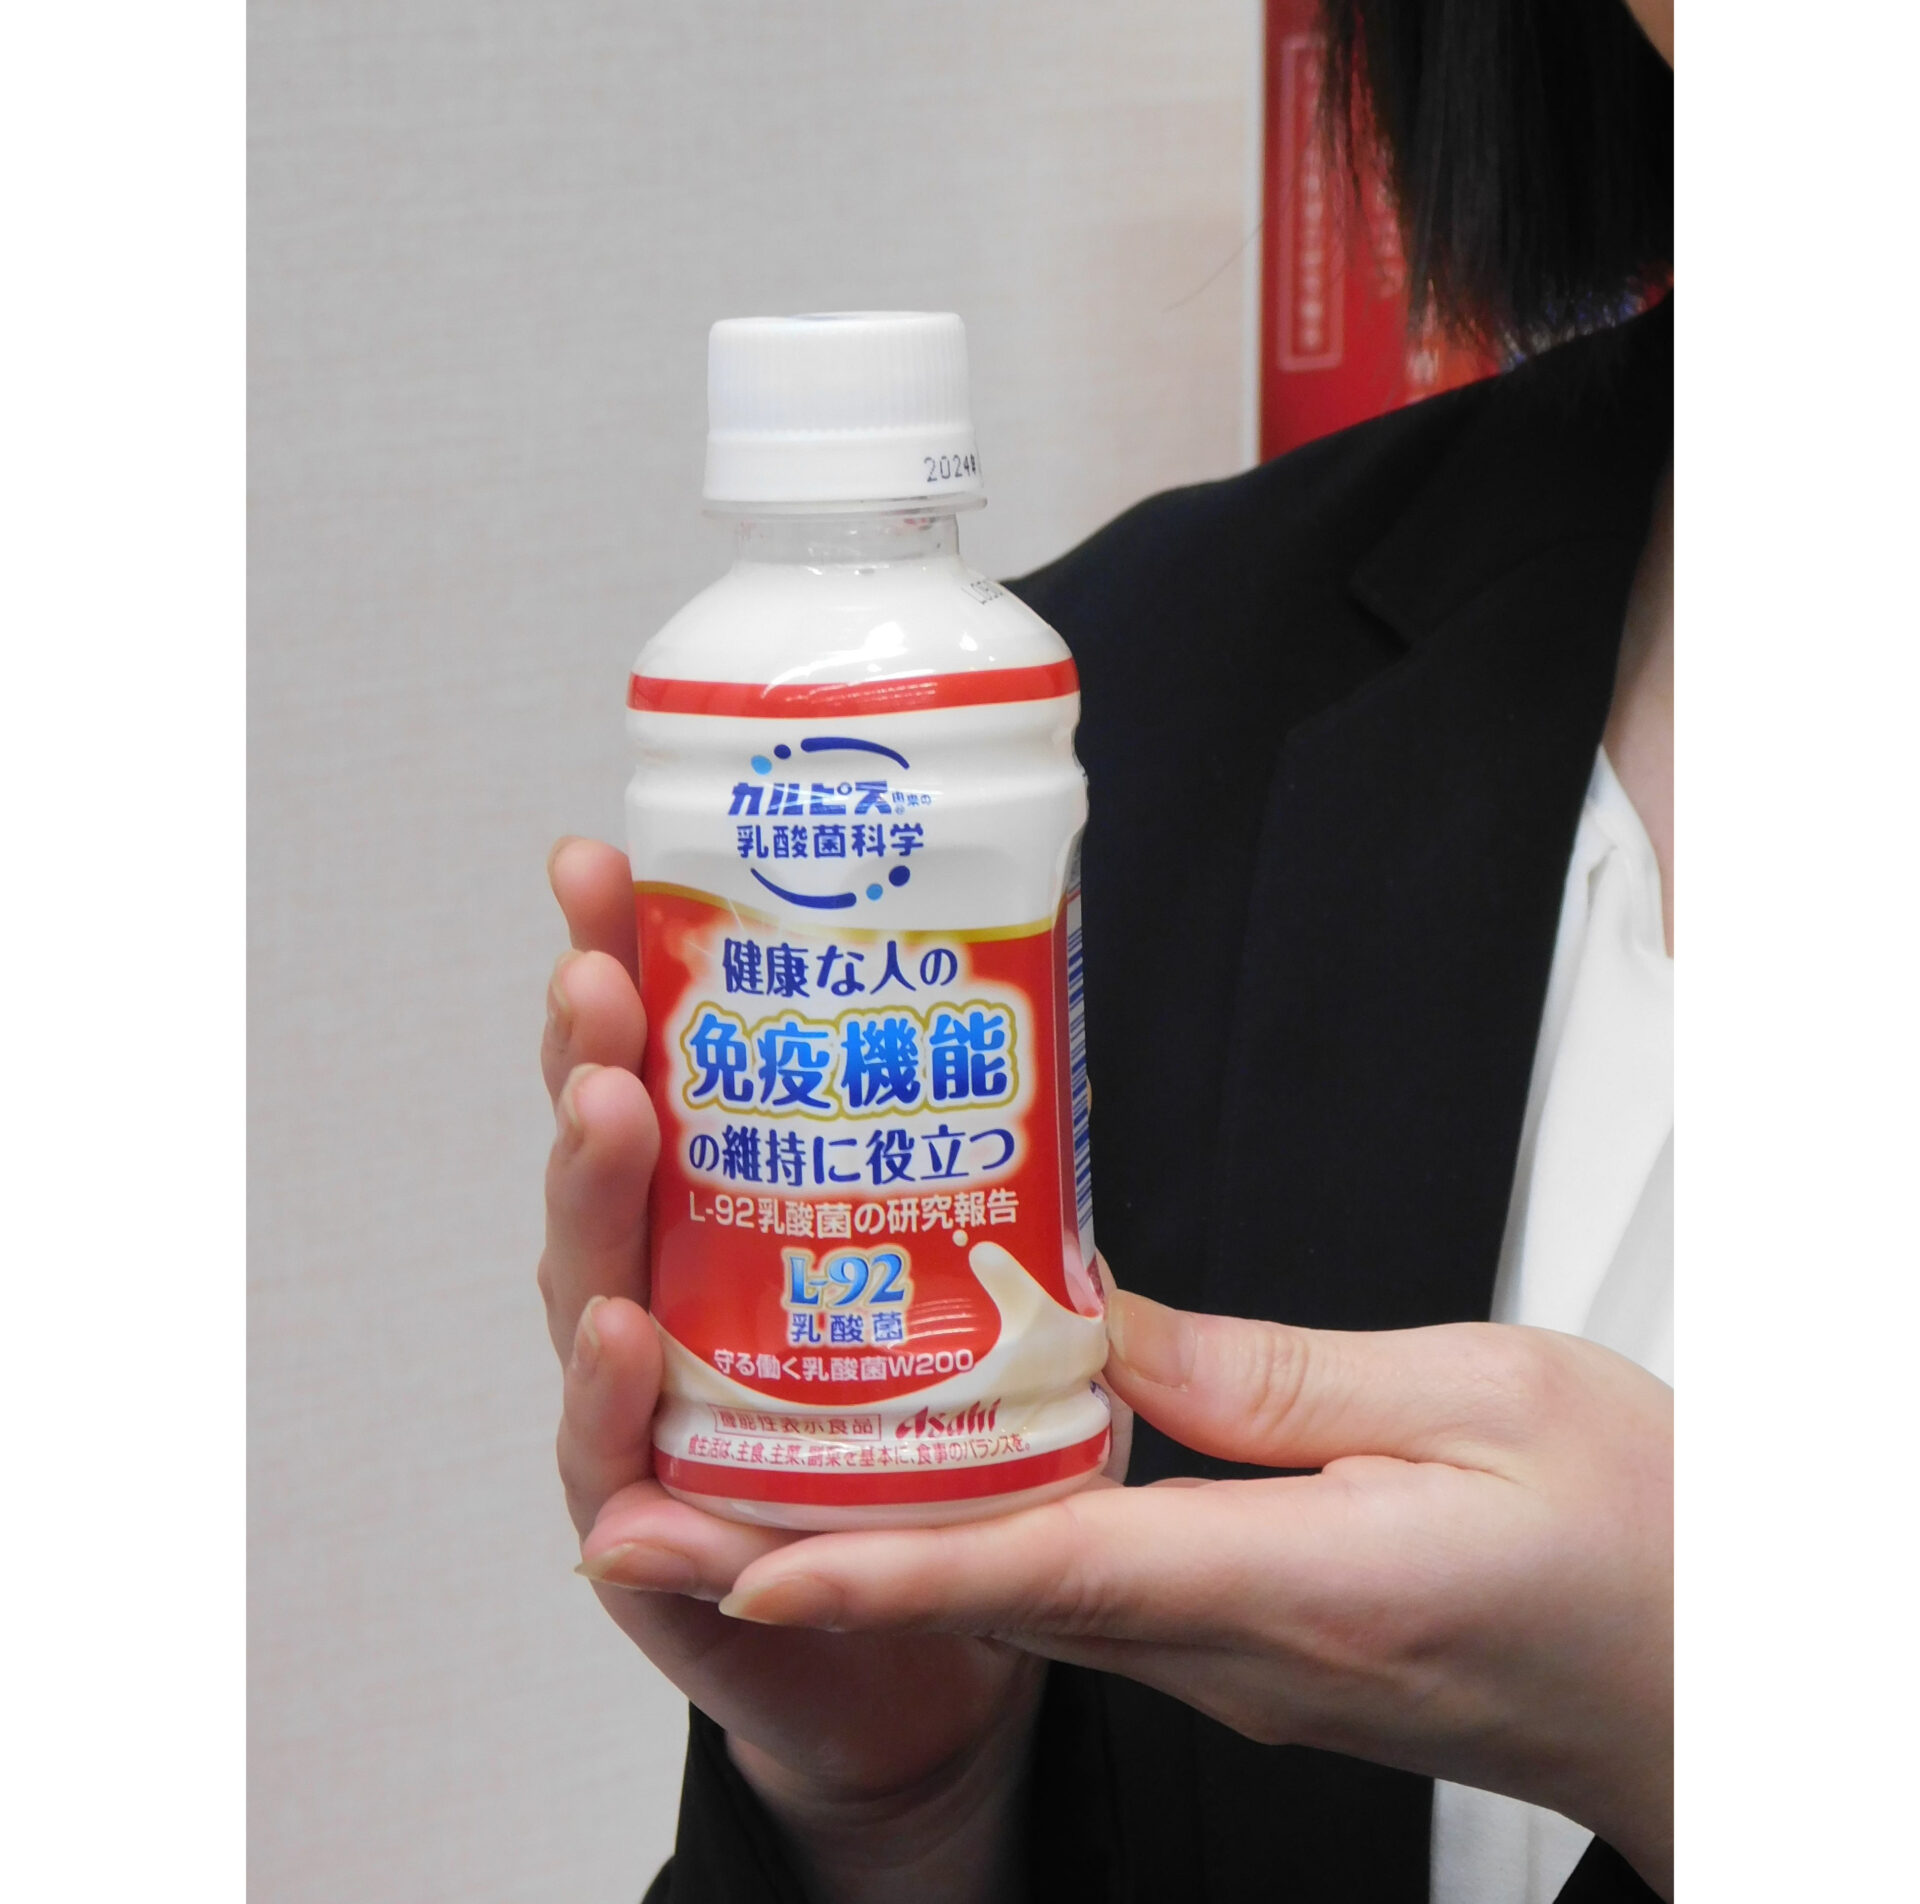 アサヒ飲料が６月に発売する機能性表示食品「守る働く乳酸きんW」の商品をもった手元の写真。免疫機能の維持に役立つとしています